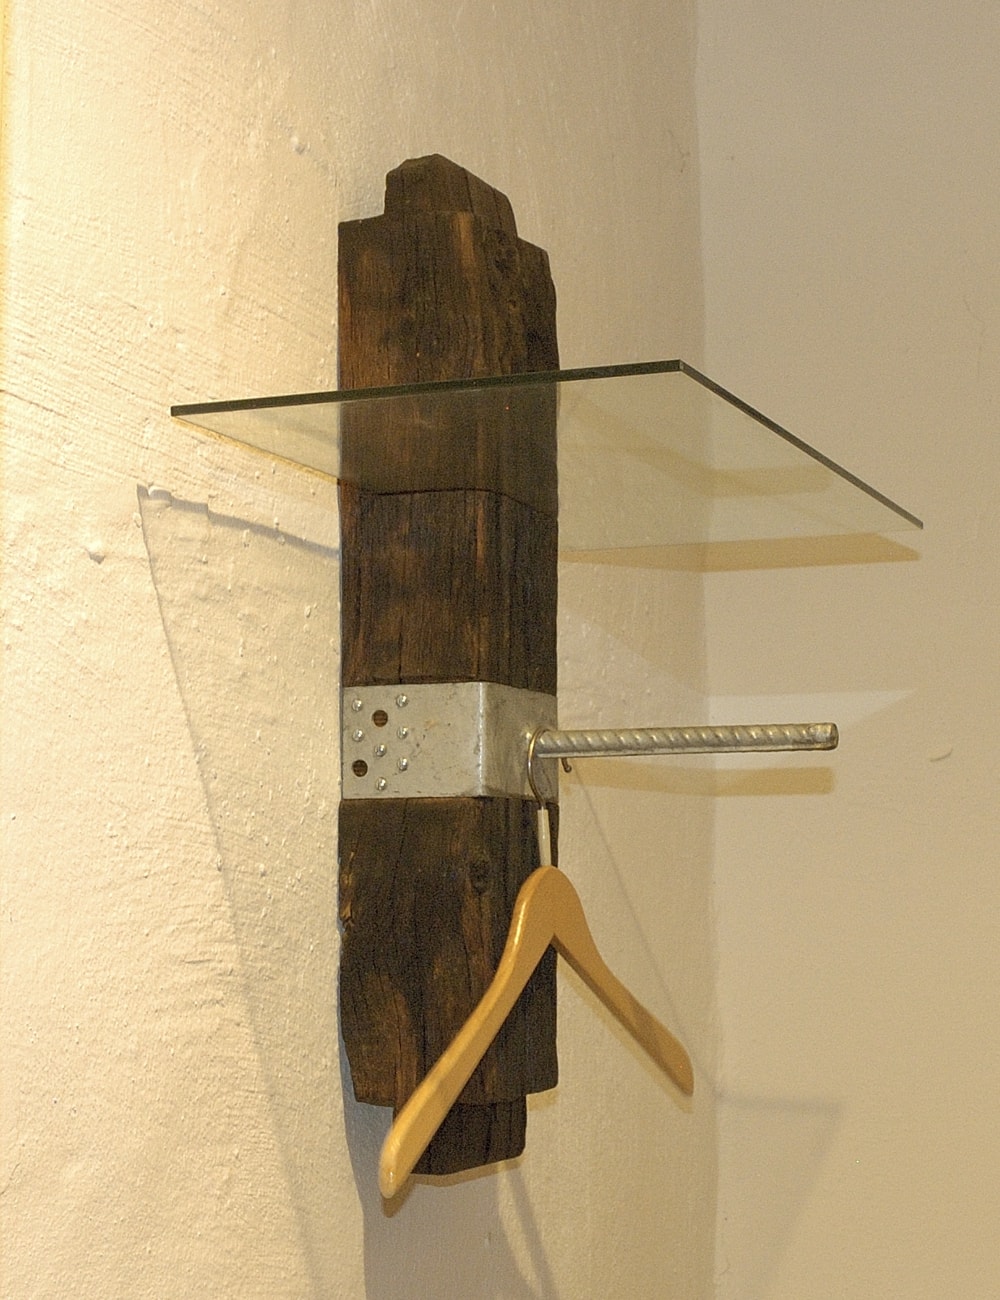 Altholzgarderobe mit rustikaler Stange, in verzinktem Baustahl, für die Kleiderbügel